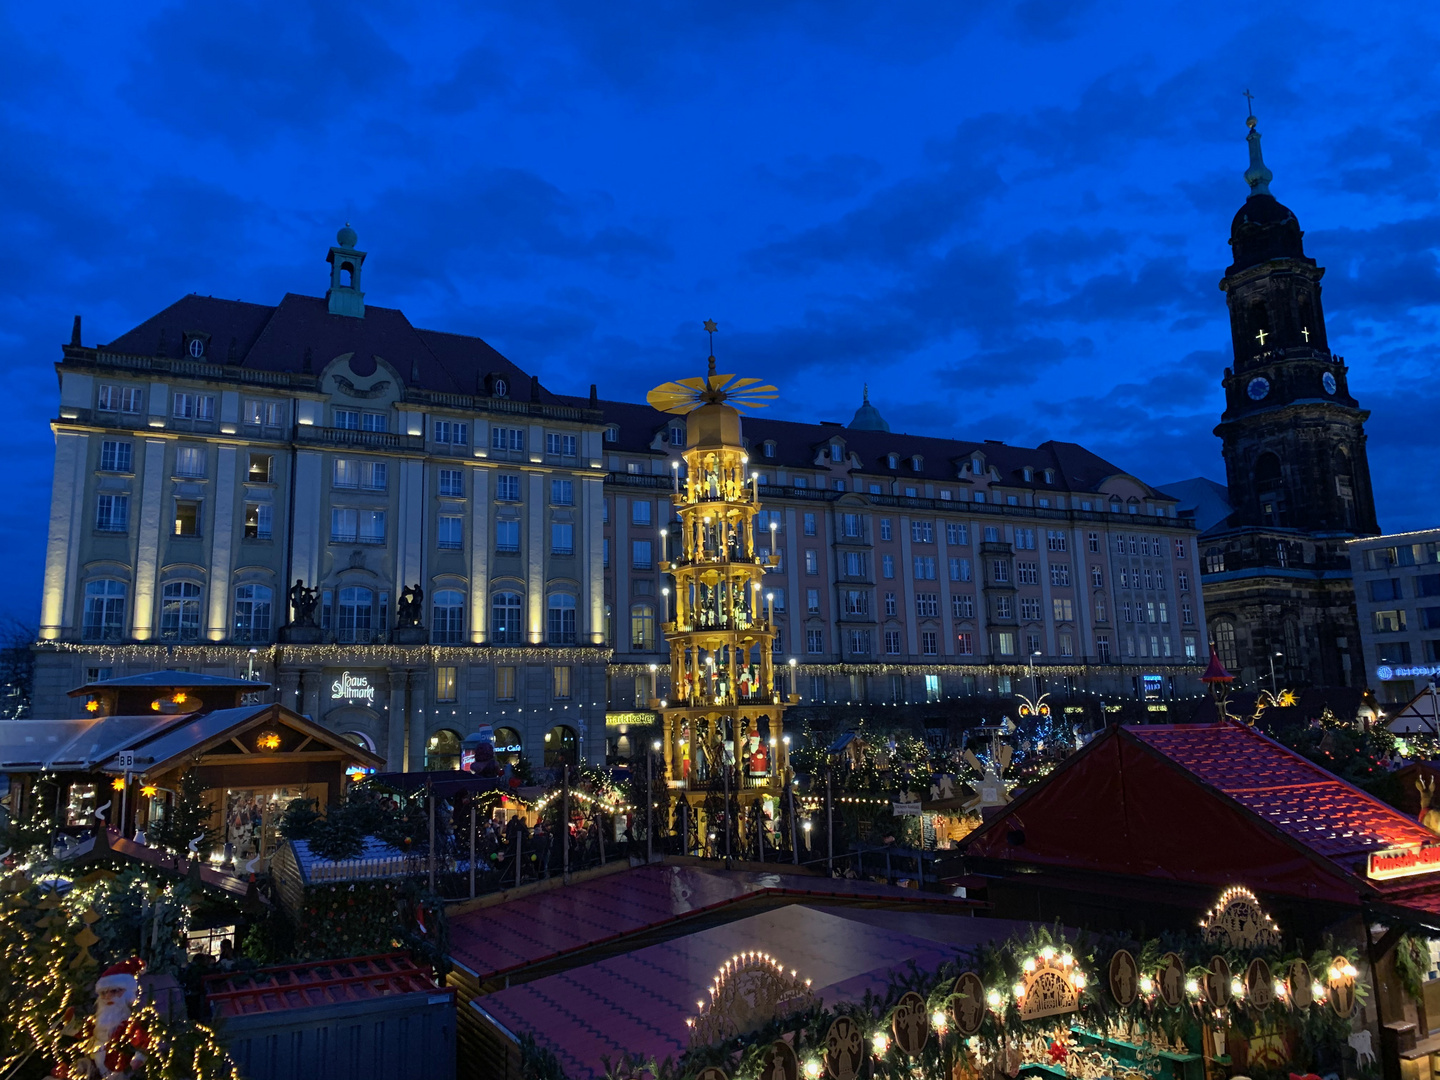 Weihnachtsmarkt am Altmarkt in Dresden, der Striezelmarkt